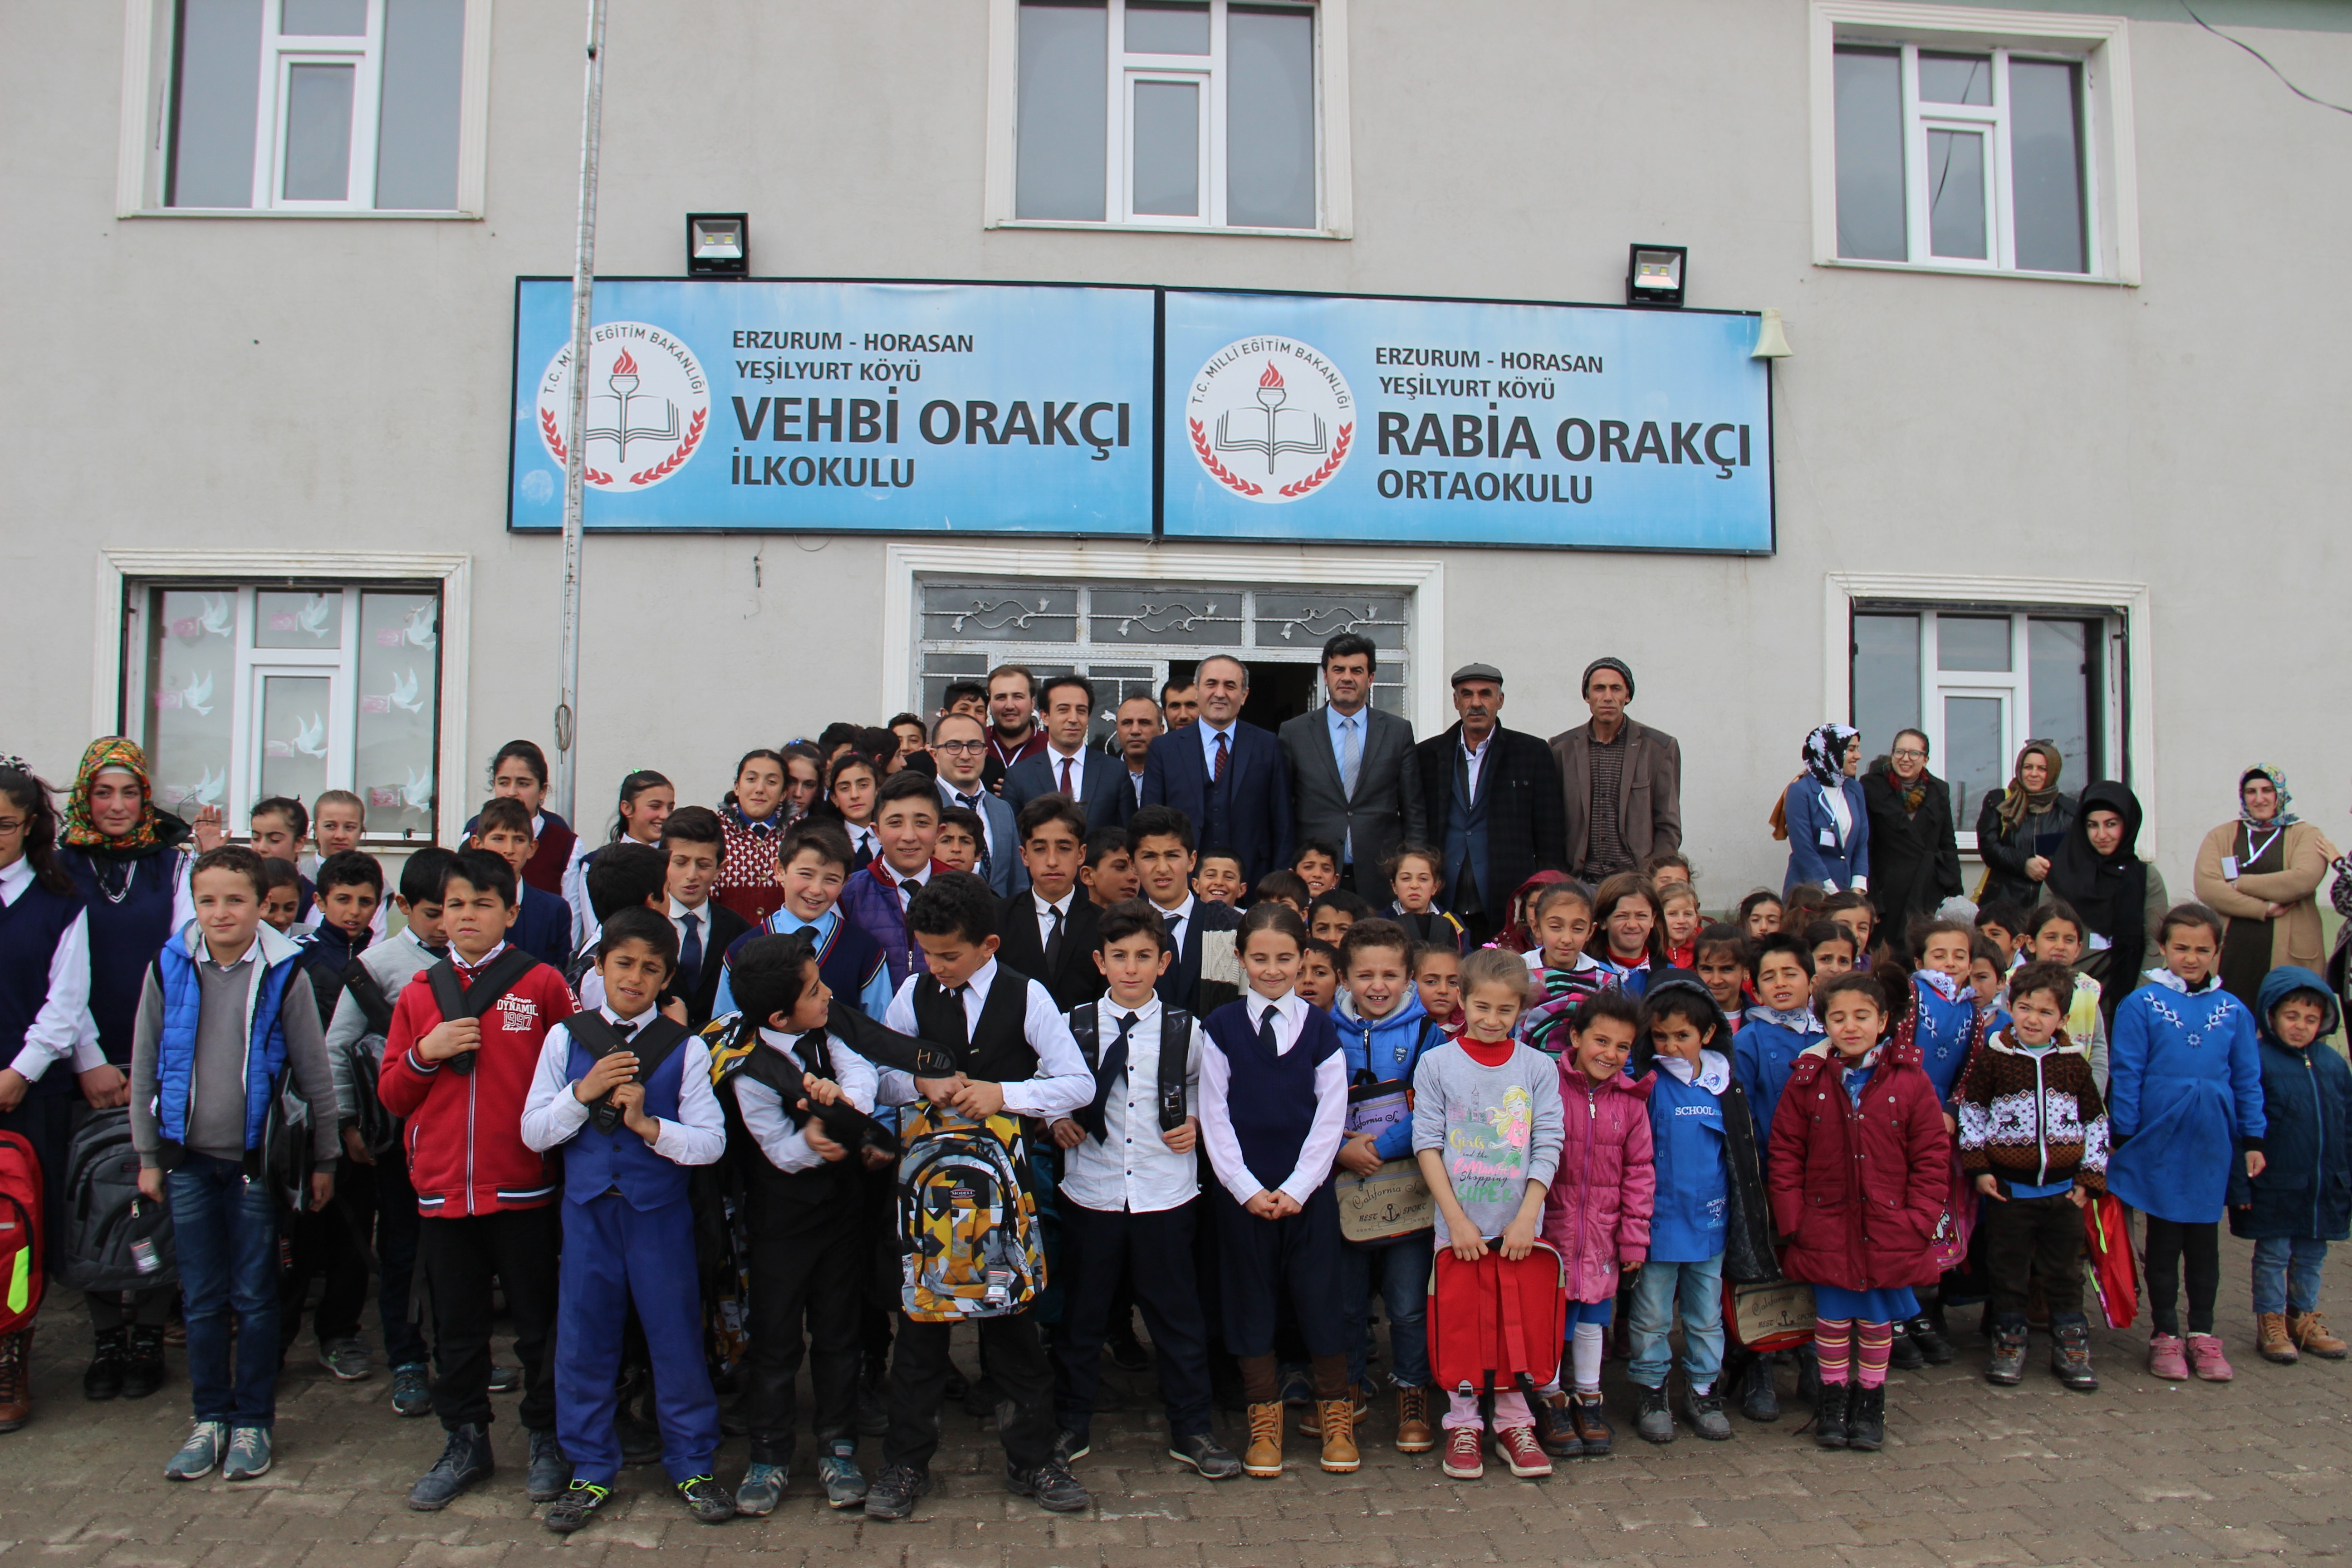 Erzurum'da Vehbi Orakçı'ya teşekkür töreni